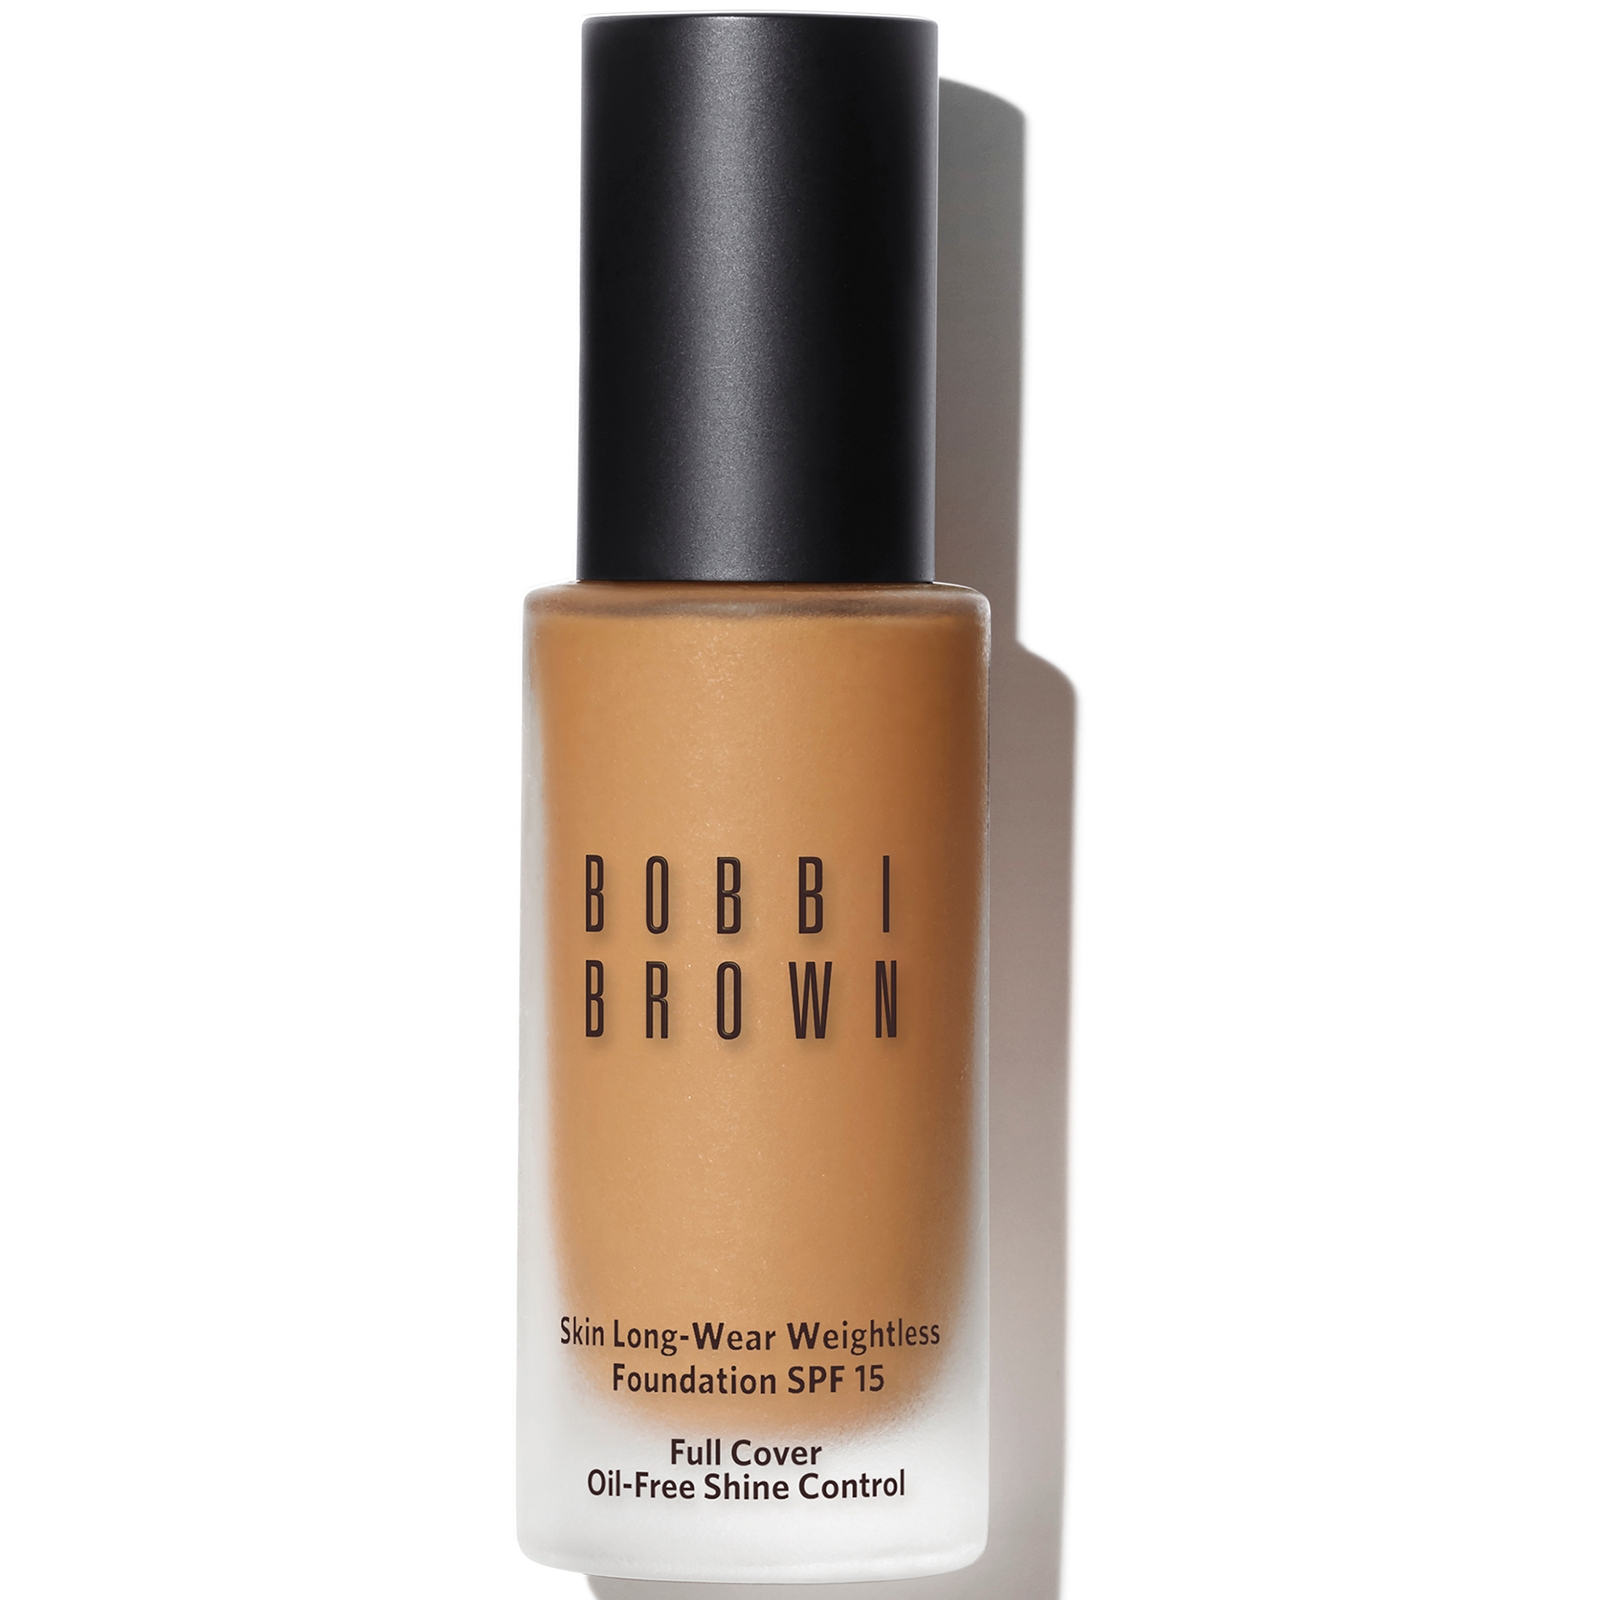 Bobbi Brown Skin Long-Wear Weightless Foundation SPF 15 (verschiedene Farbtöne) - Golden Natural von Bobbi Brown